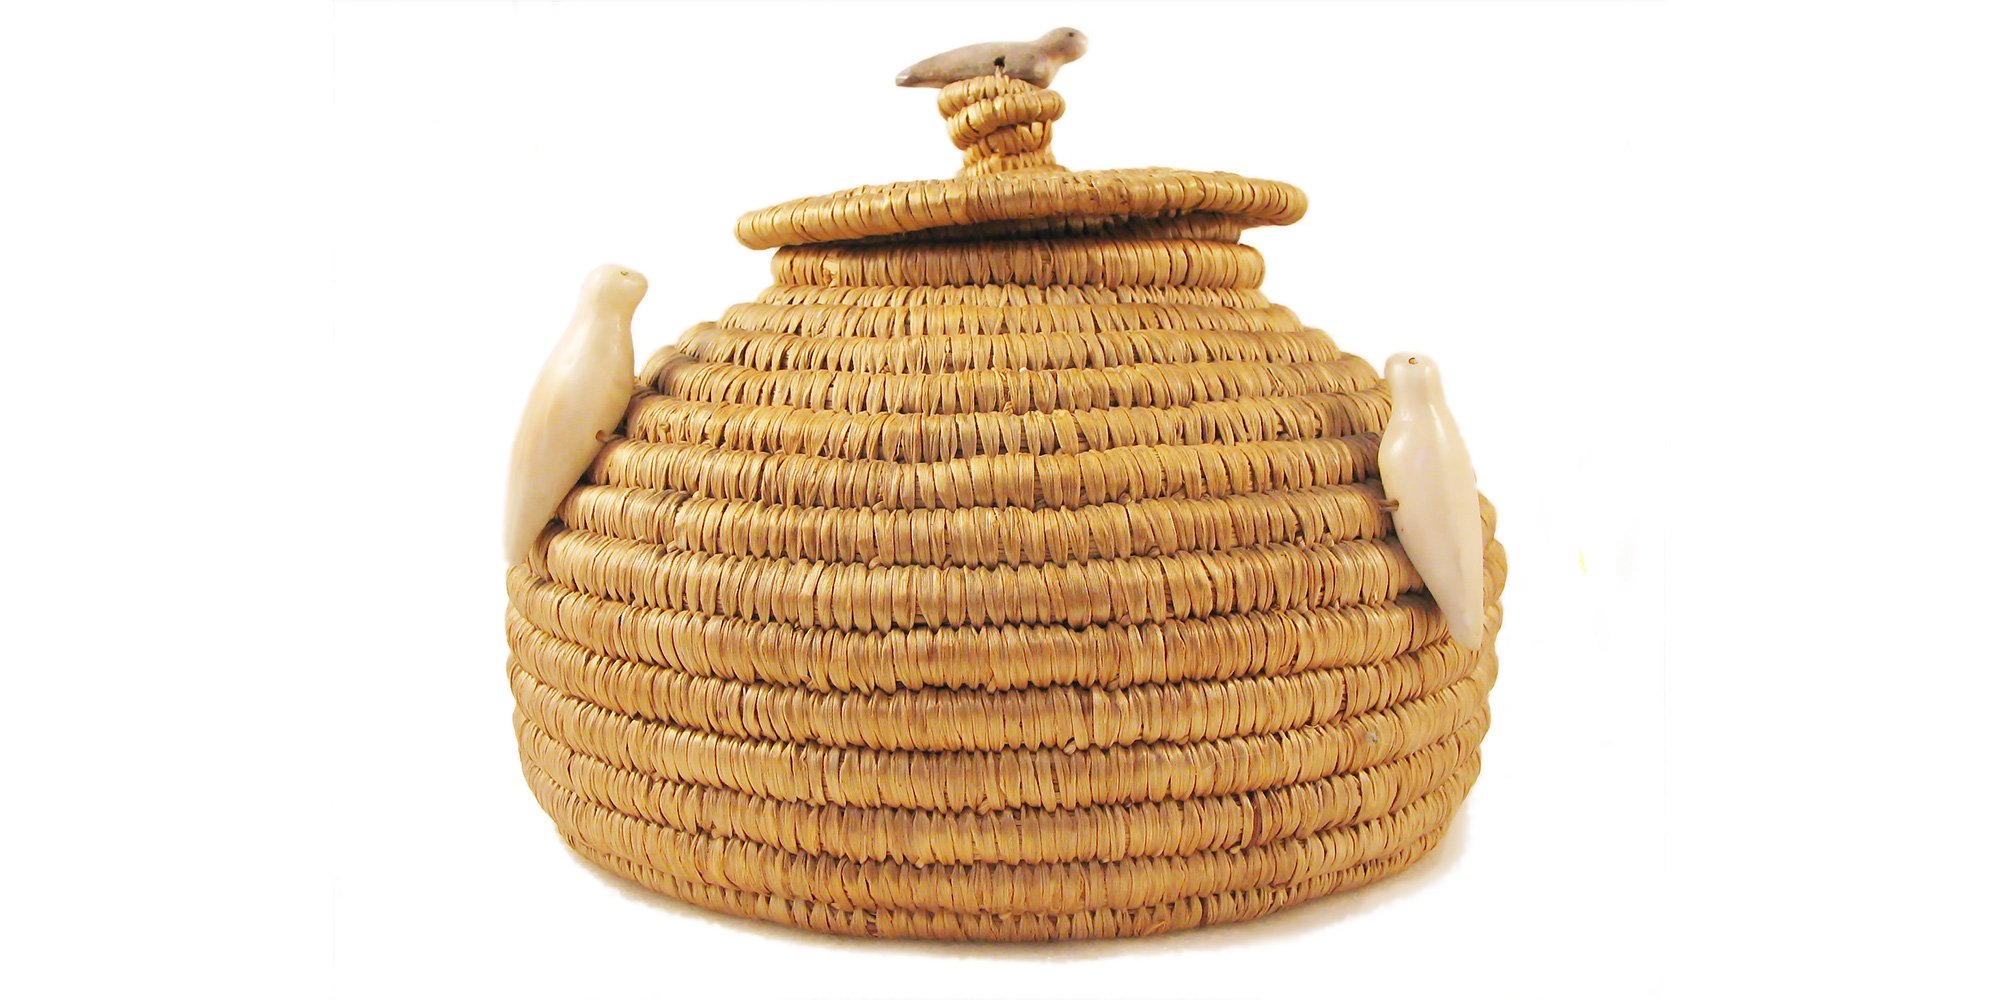 Lidded Eskimo basket with seal fetishes